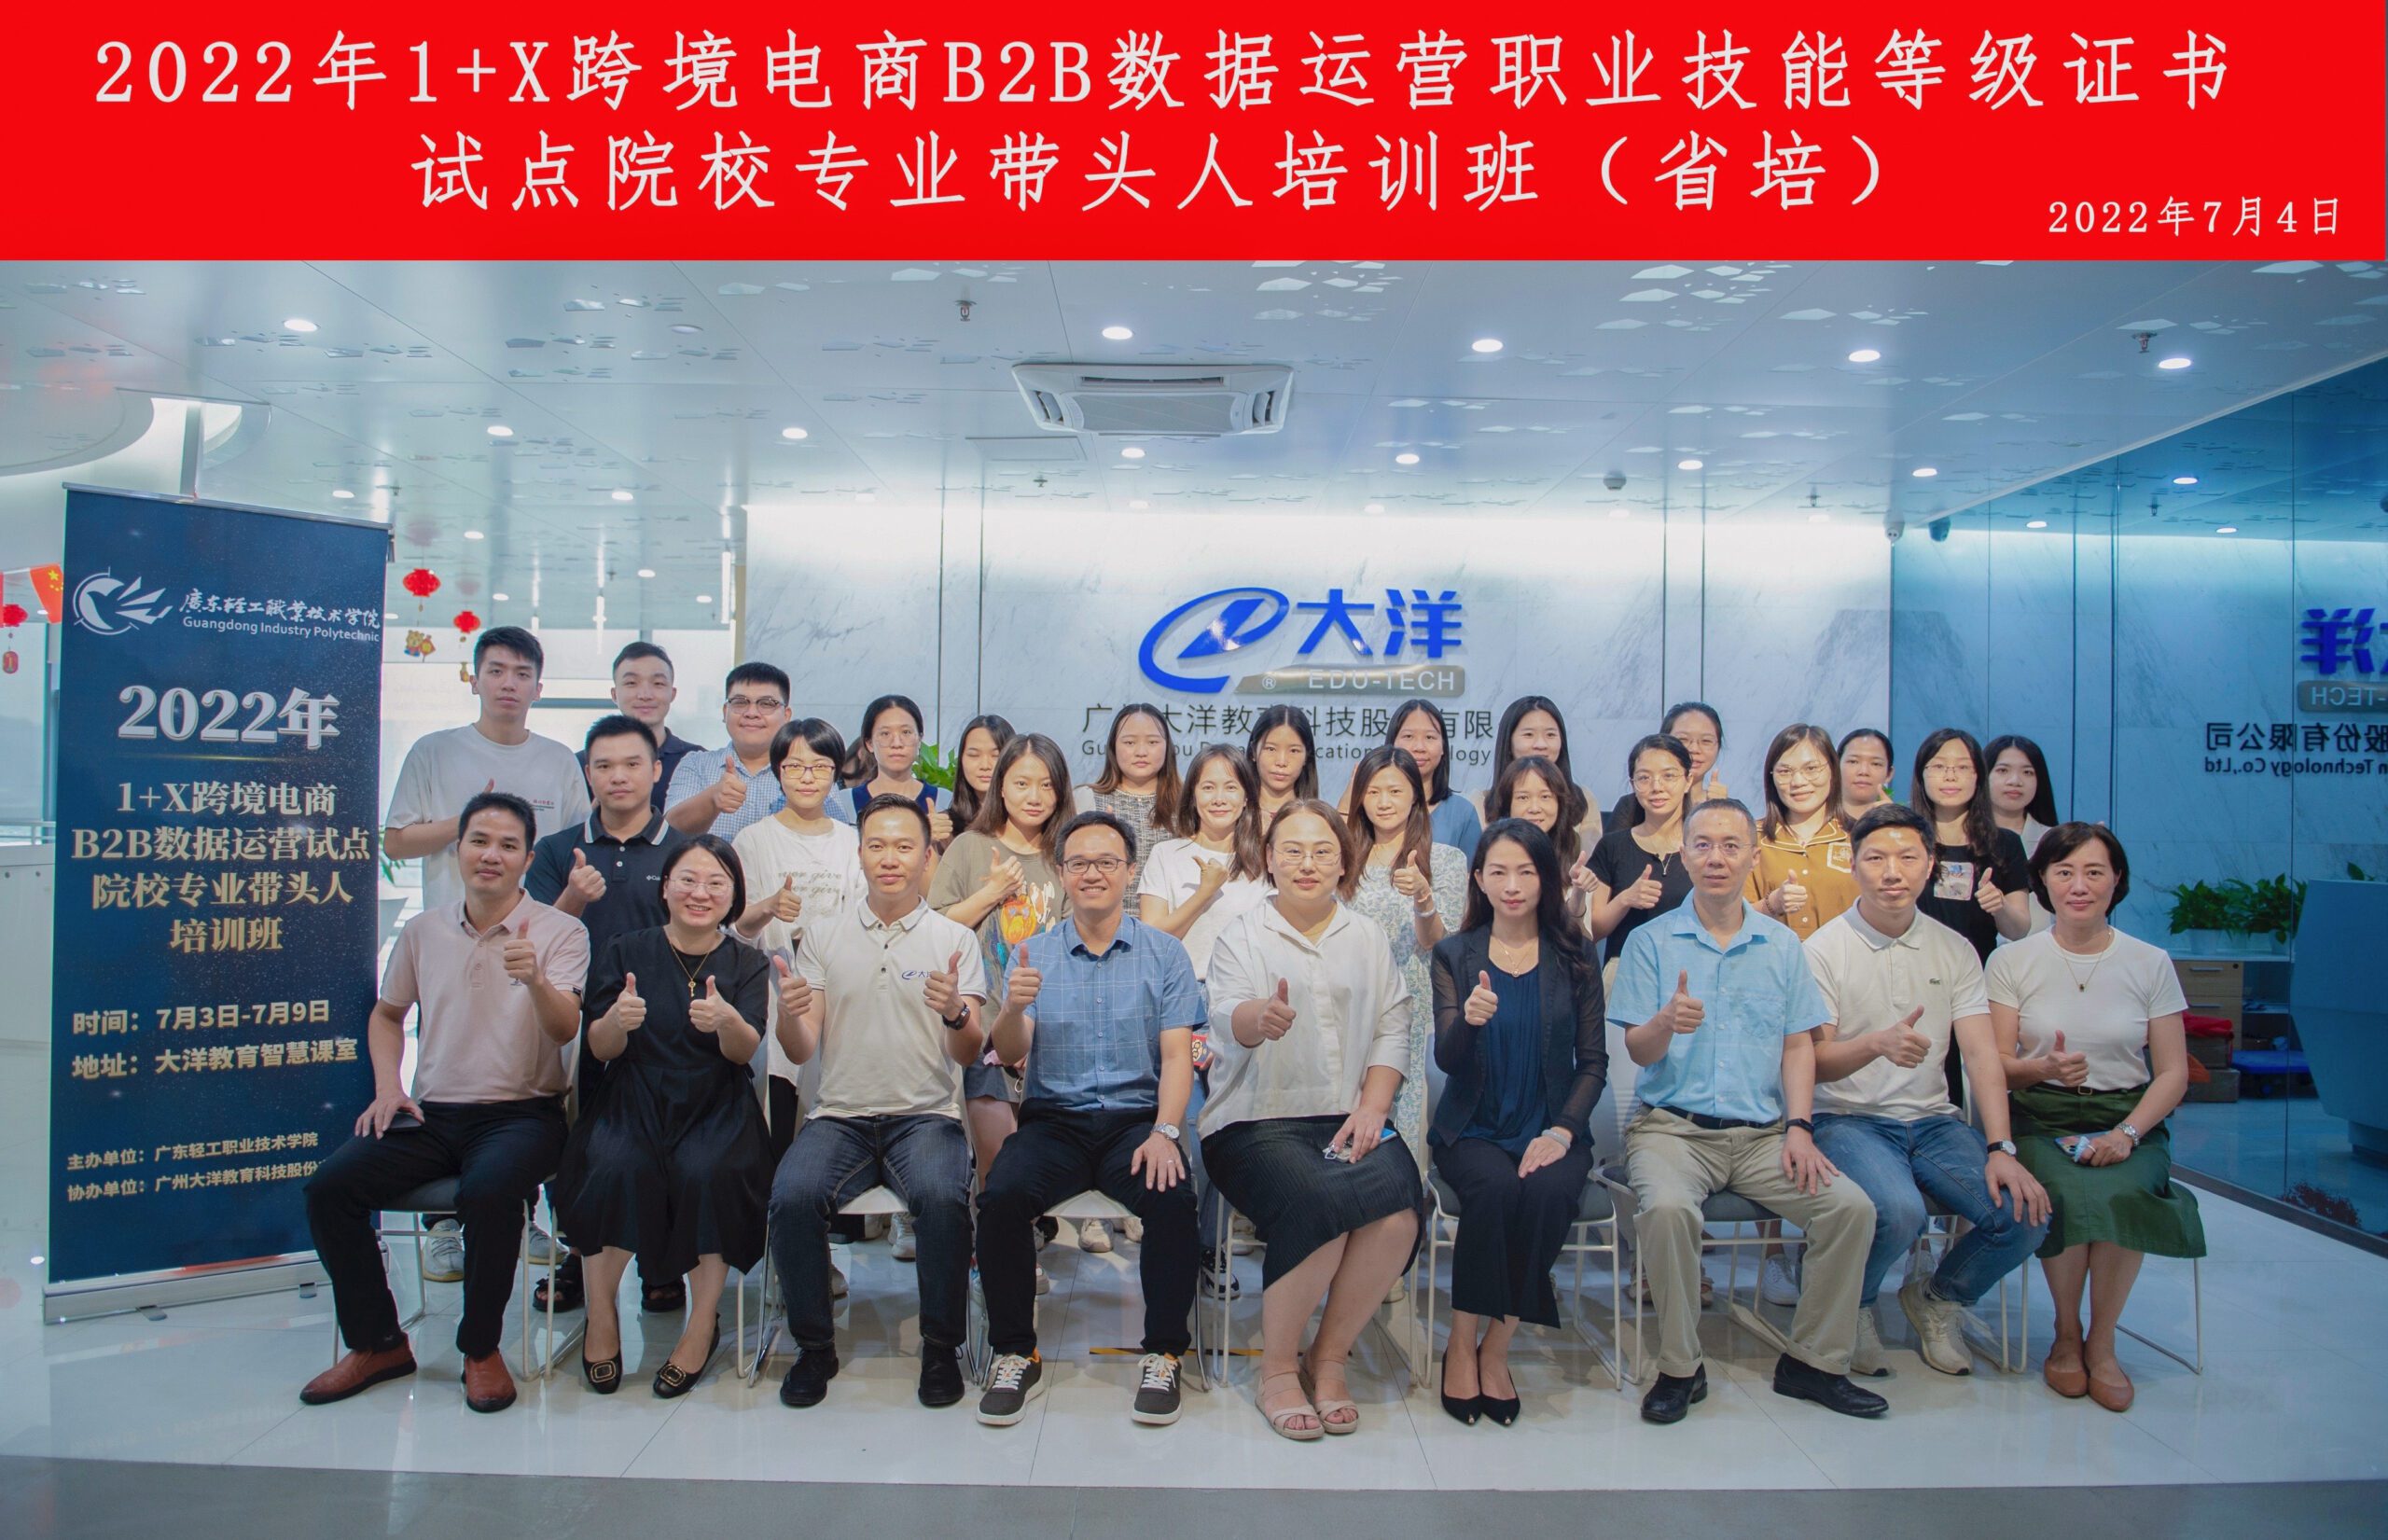 2022年1+X跨境電(diàn)商(shāng)B2B数据运营专业带头人培训班隆重开班